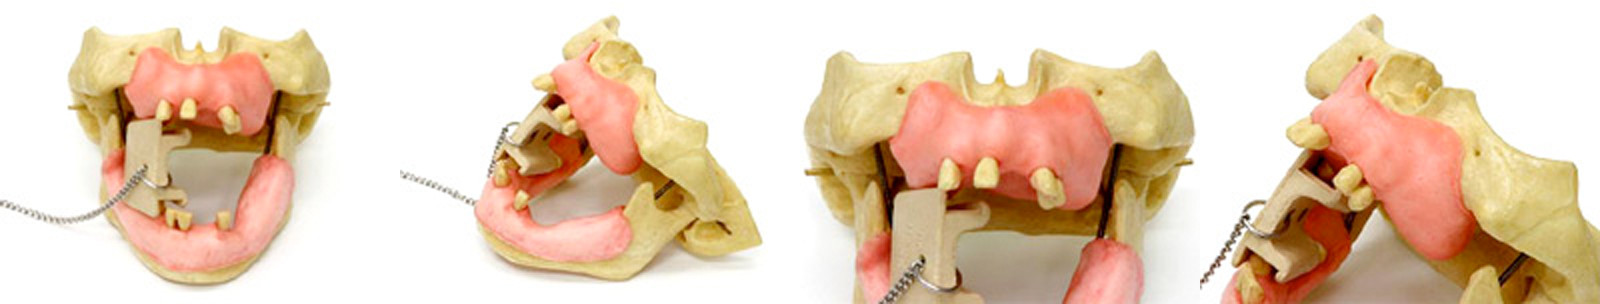 上顎左側部インプラント埋入＋サイナスリフト術（顎模型使用）